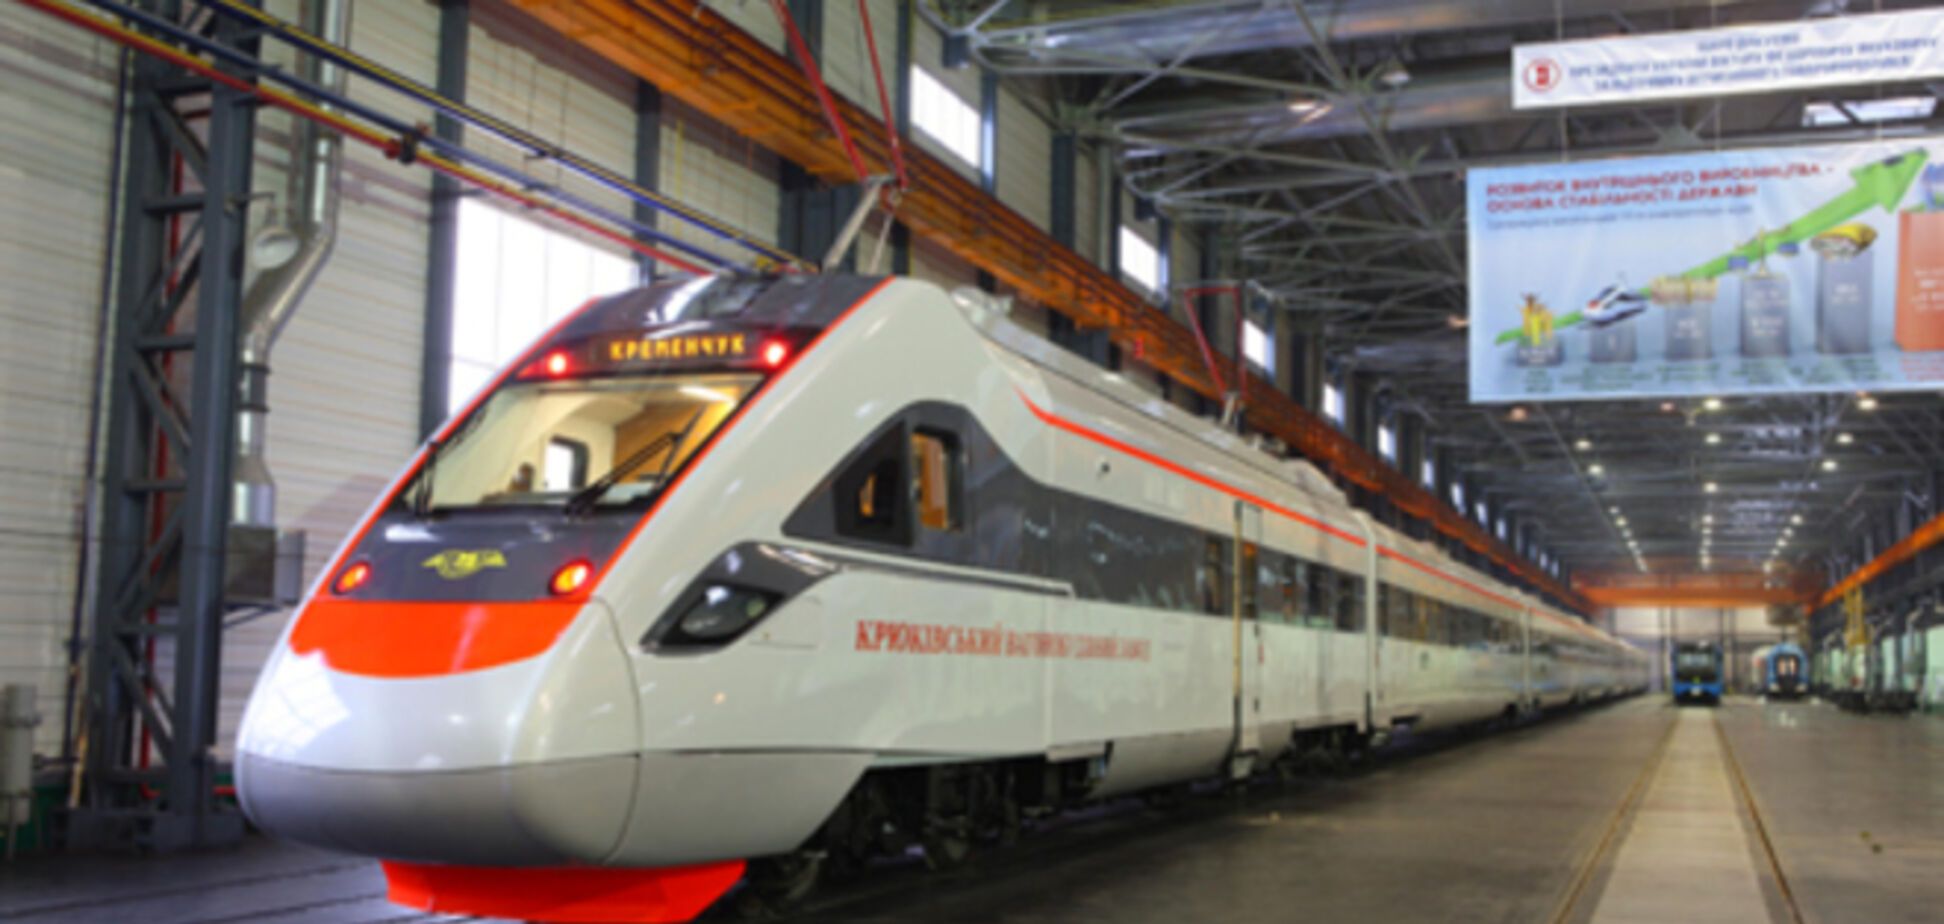 Поїзд Крюківського заводу допустили до експлуатації без повного циклу випробувань